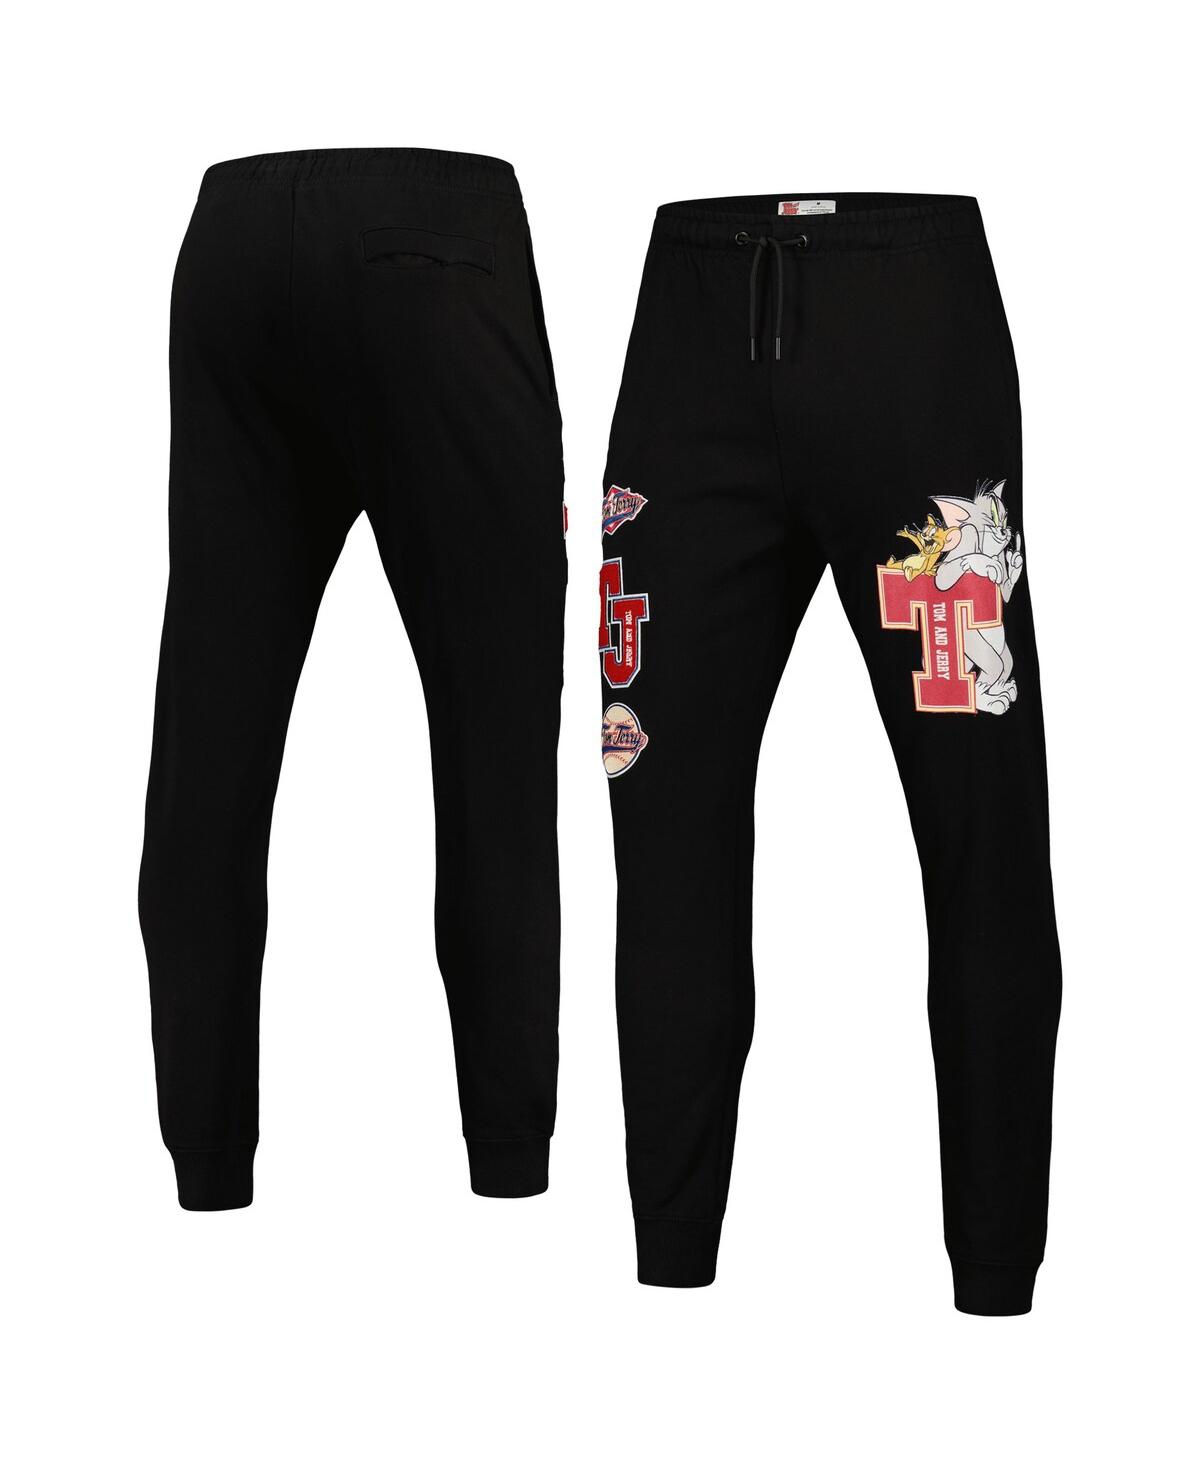 Men's Black Tom and Jerry University Jogger Pants - Black